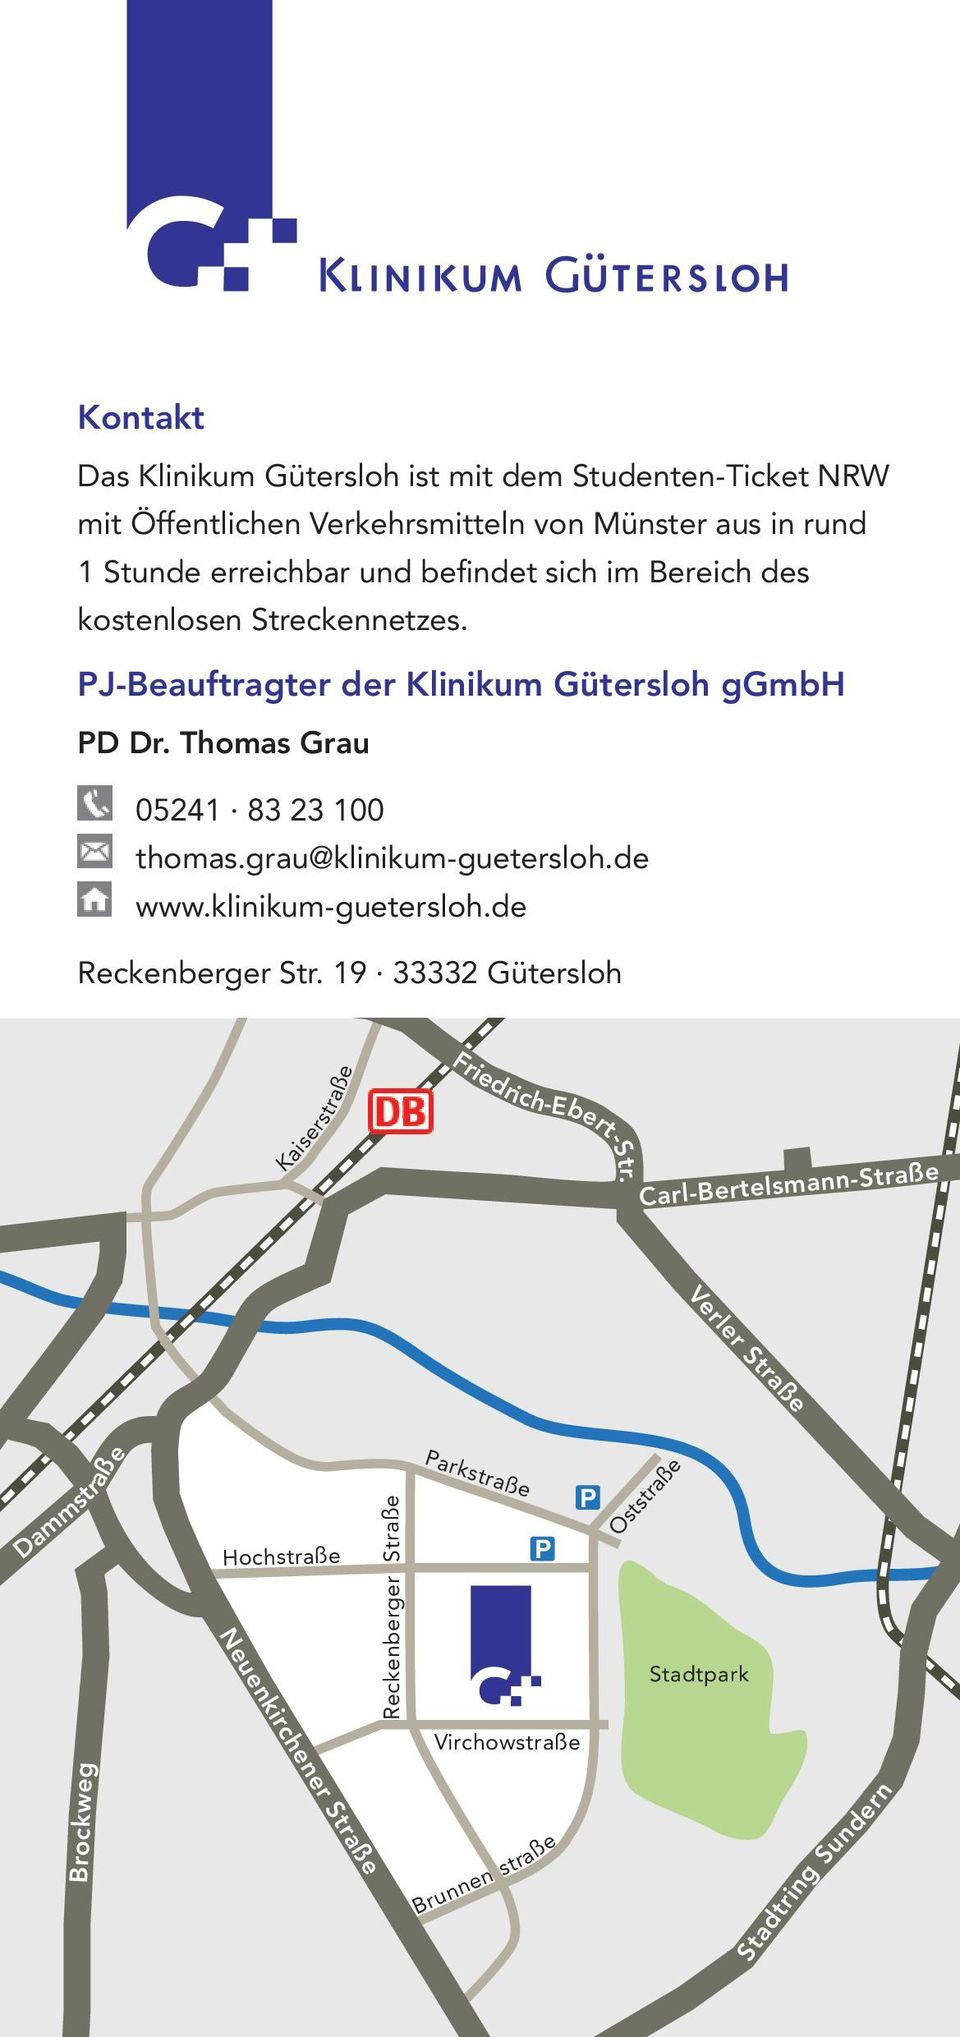 Thomas Grau 05241 83 23 100 thomas.grau@klinikum-guetersloh.de www.klinikum-guetersloh.de Reckenberger Str.